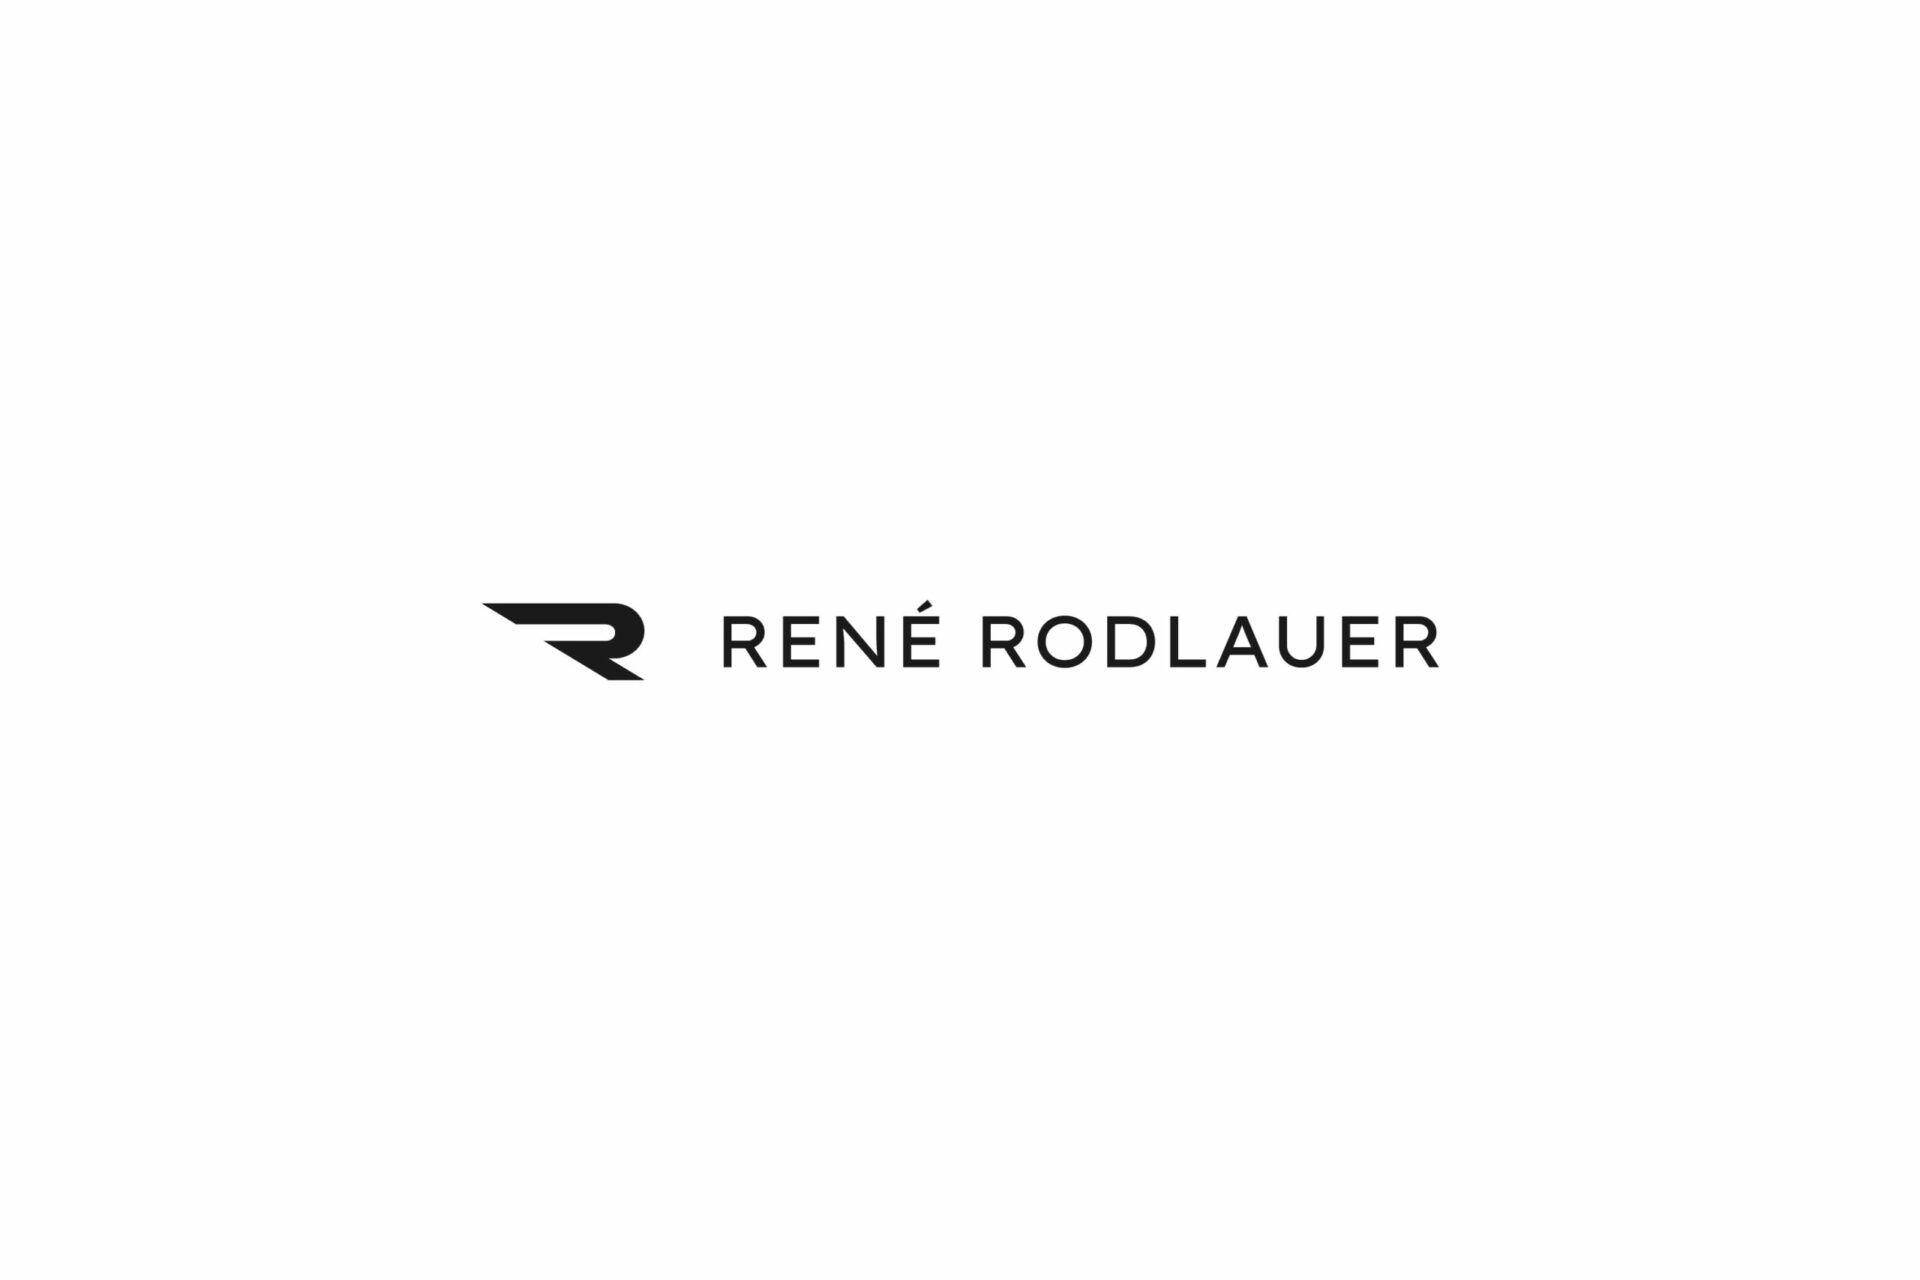 Schwarzes Icon und Schriftzug des Logos von René Rodlauer auf weißem Hintergrund.